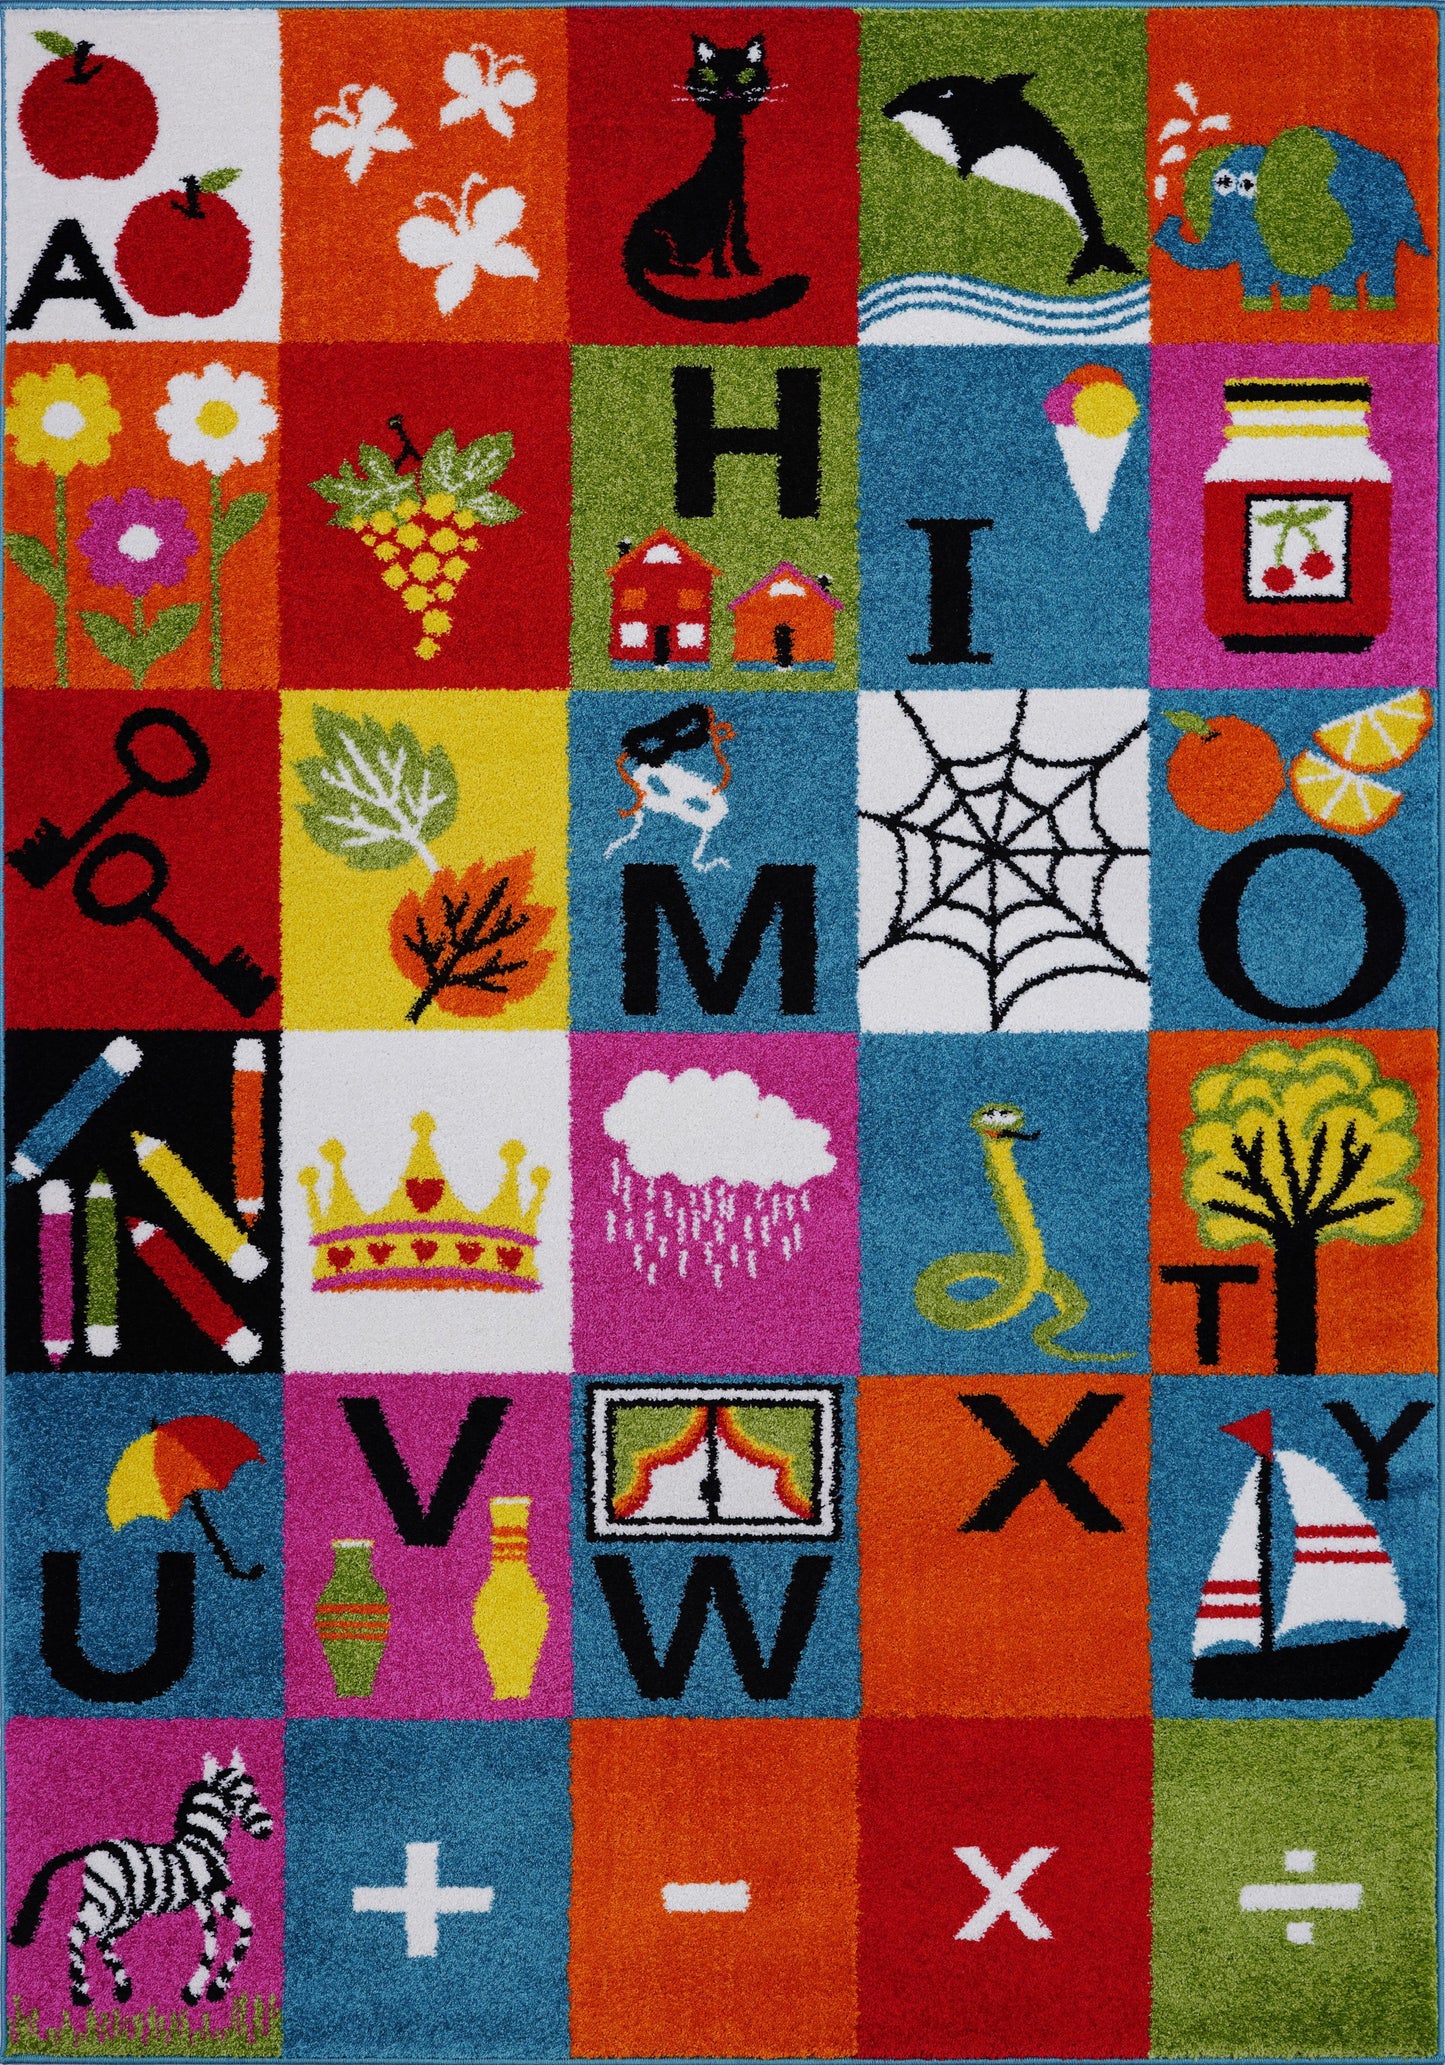 Alphabets Theme Adorable Soft Comfortable Area Rug Carpet in Multicolor, 5x7 (5'3" x 7'4", 160cm x 225cm), 5'3" x 7'4" (160cm x 225cm), Multicolor